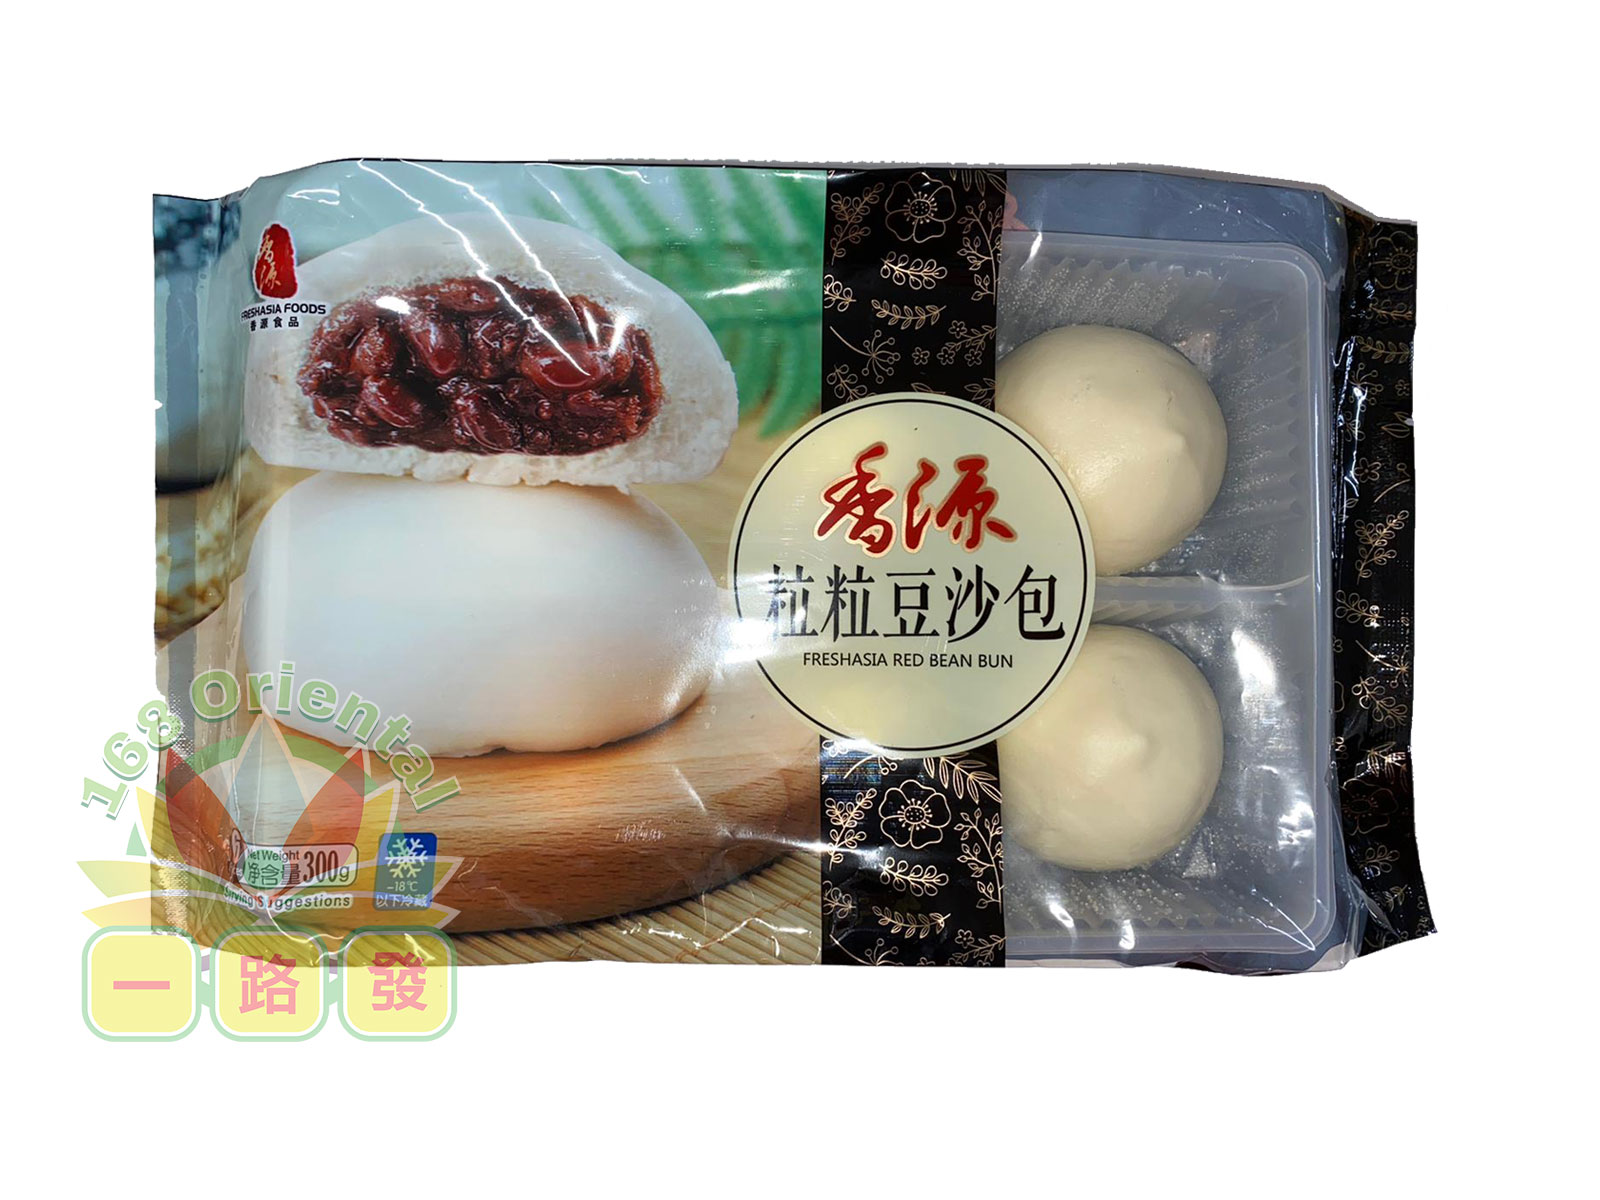 Fresh Asia Buns Red Bean Bun 6 Pieces 390g - 168 Oriental